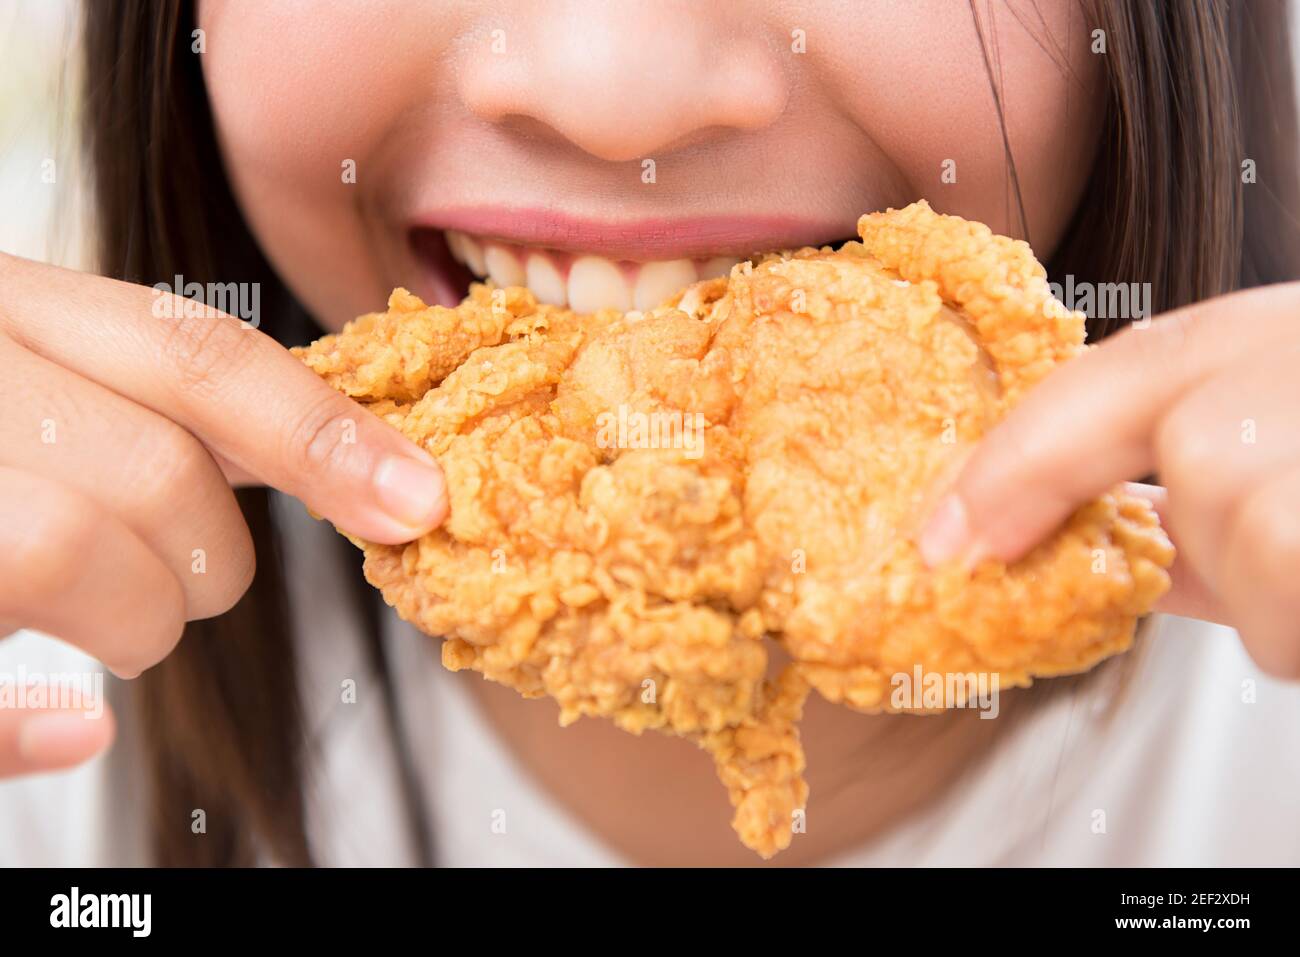 Jeune femme mangeant du poulet frits - gros plan Banque D'Images